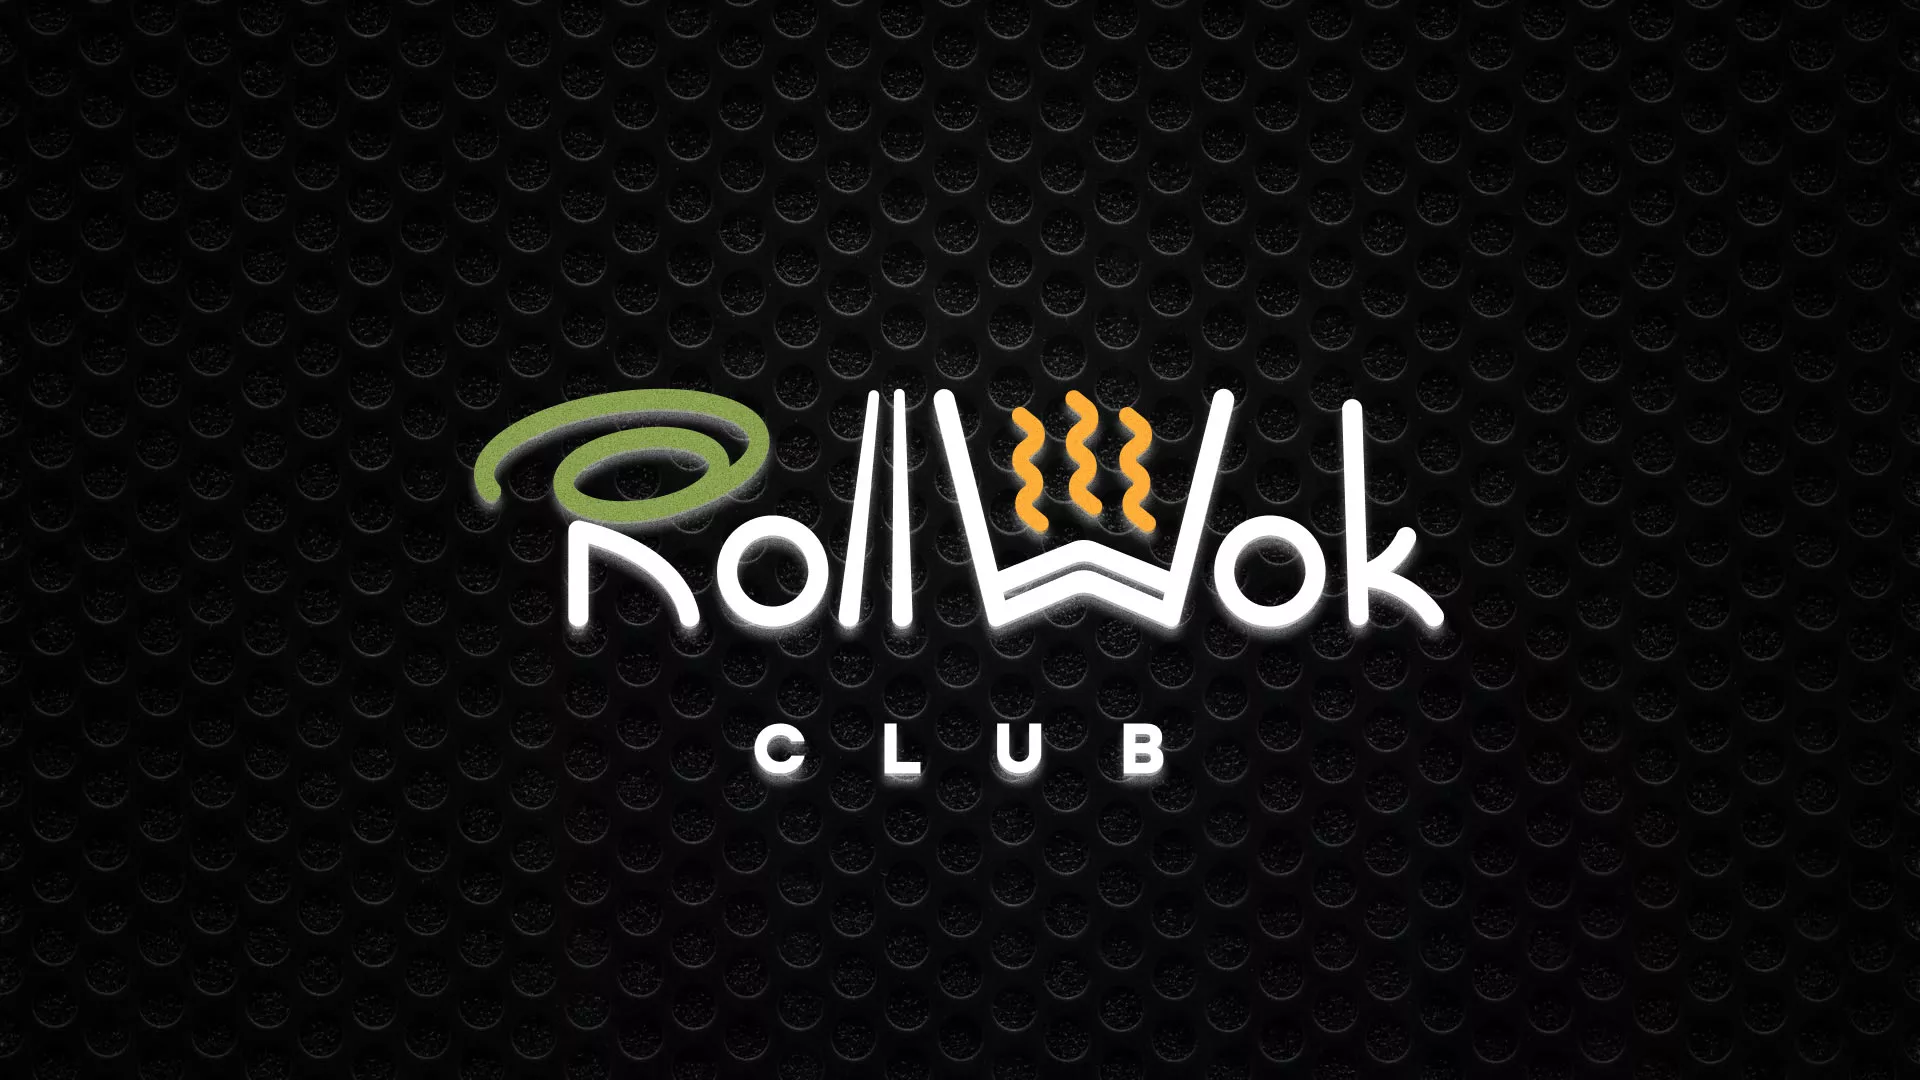 Брендирование торговых точек суши-бара «Roll Wok Club» в Кадникове